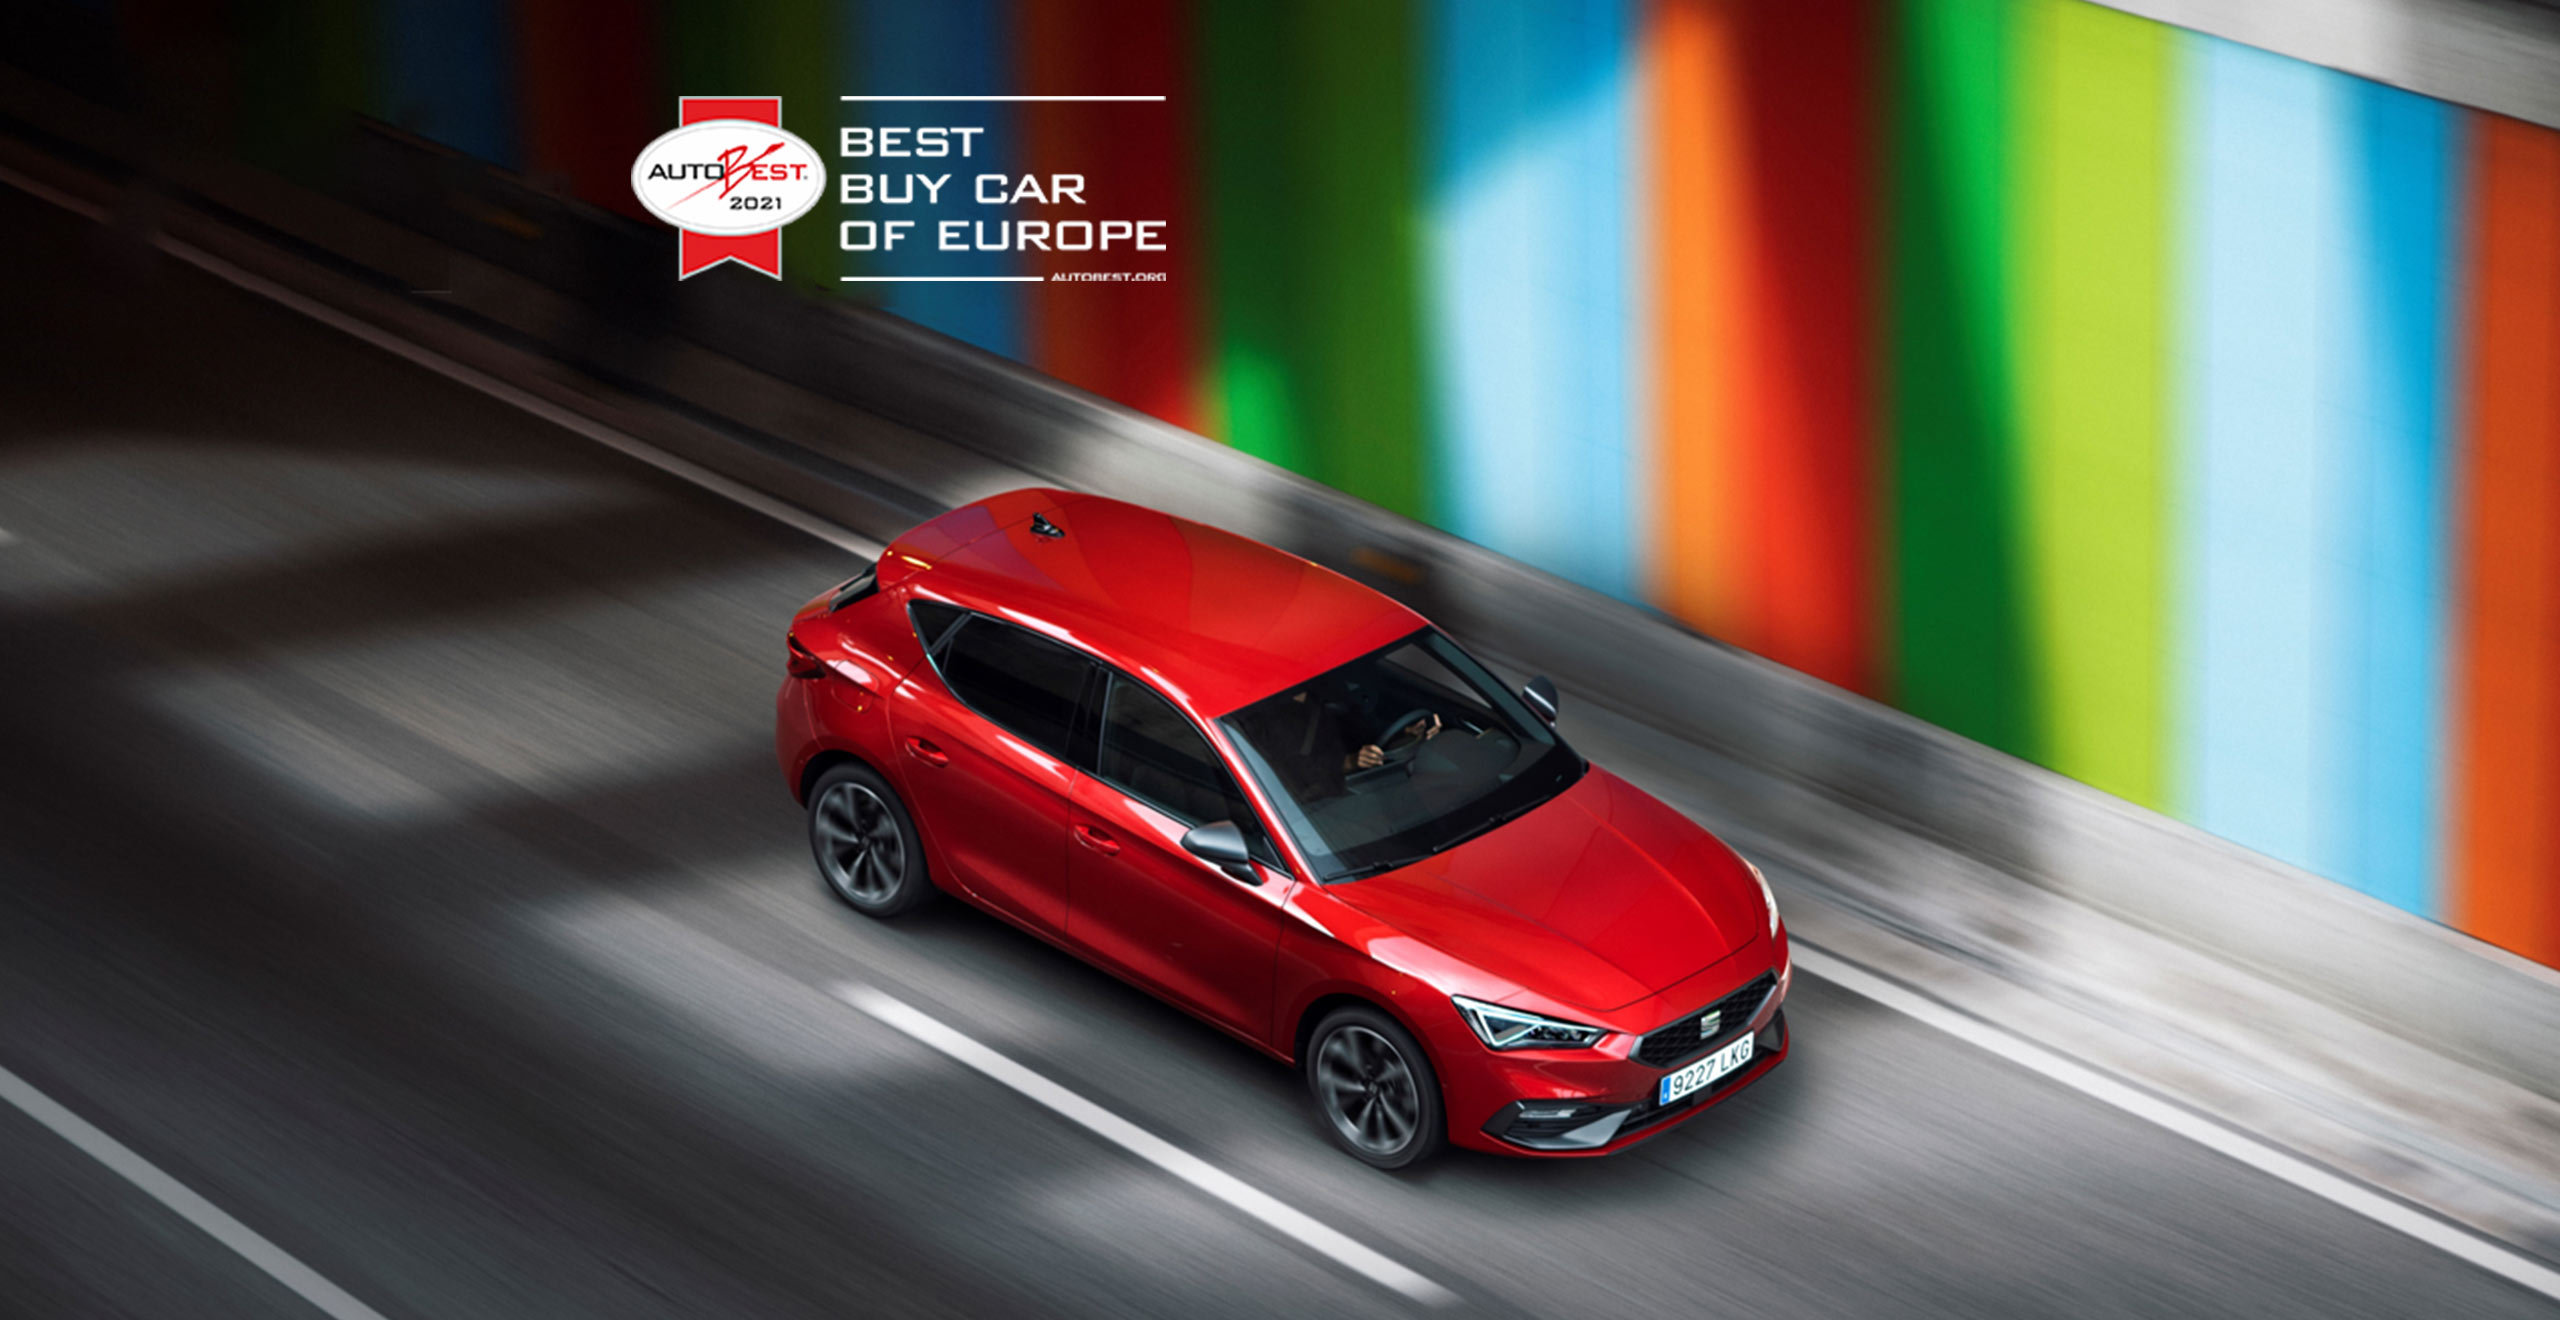 nouvelle SEAT Leon gagne le prix européen Best Buy Car of Europe 2021